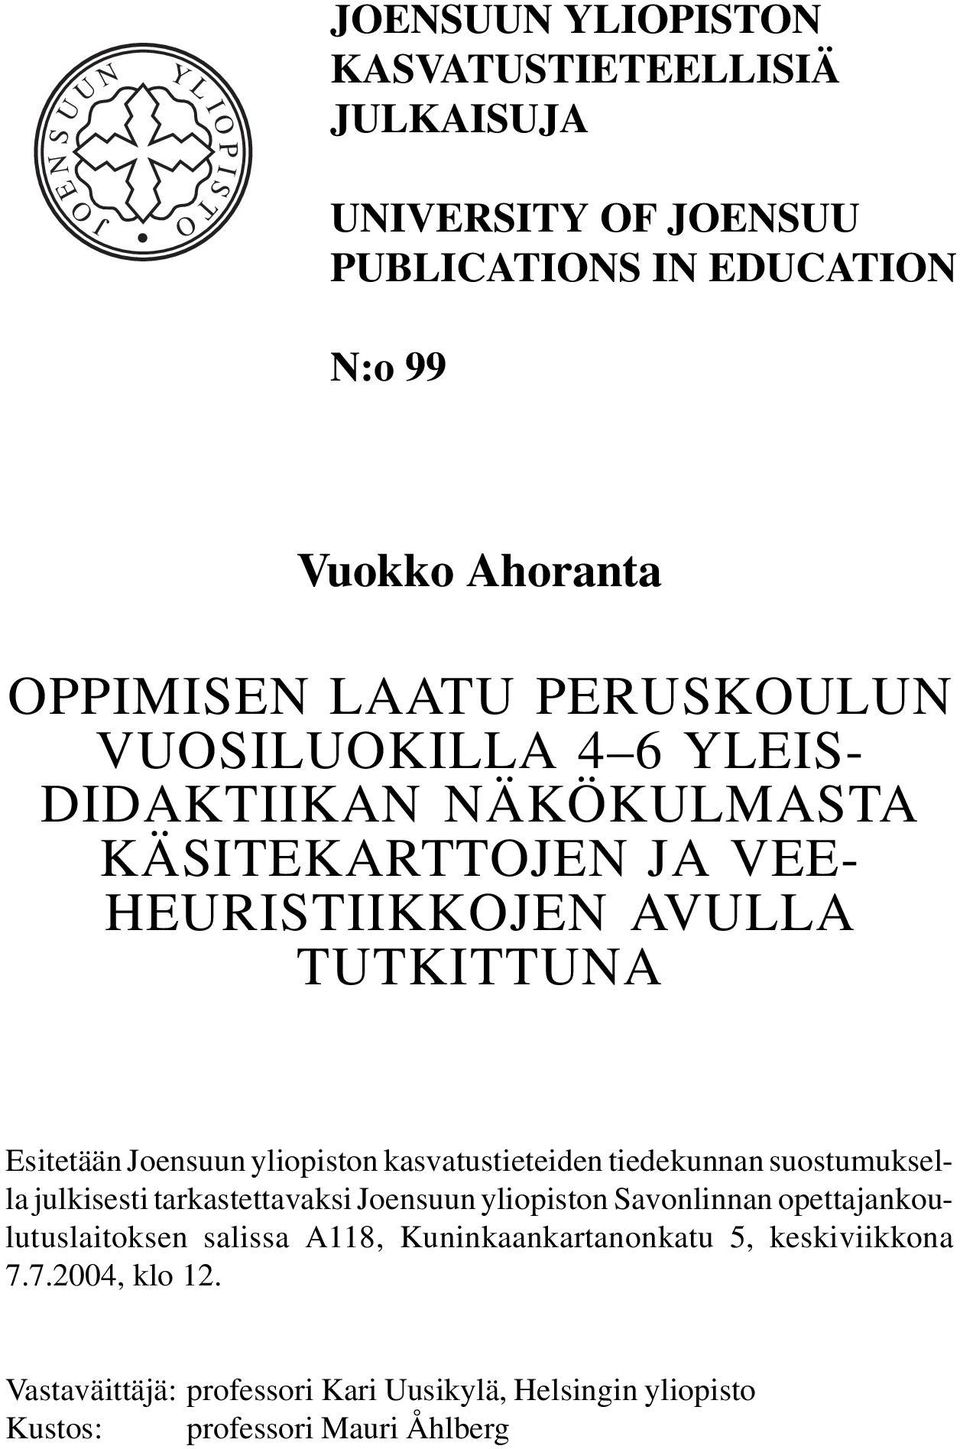 Joensuun yliopiston kasvatustieteiden tiedekunnan suostumuksella julkisesti tarkastettavaksi Joensuun yliopiston Savonlinnan opettajankoulutuslaitoksen